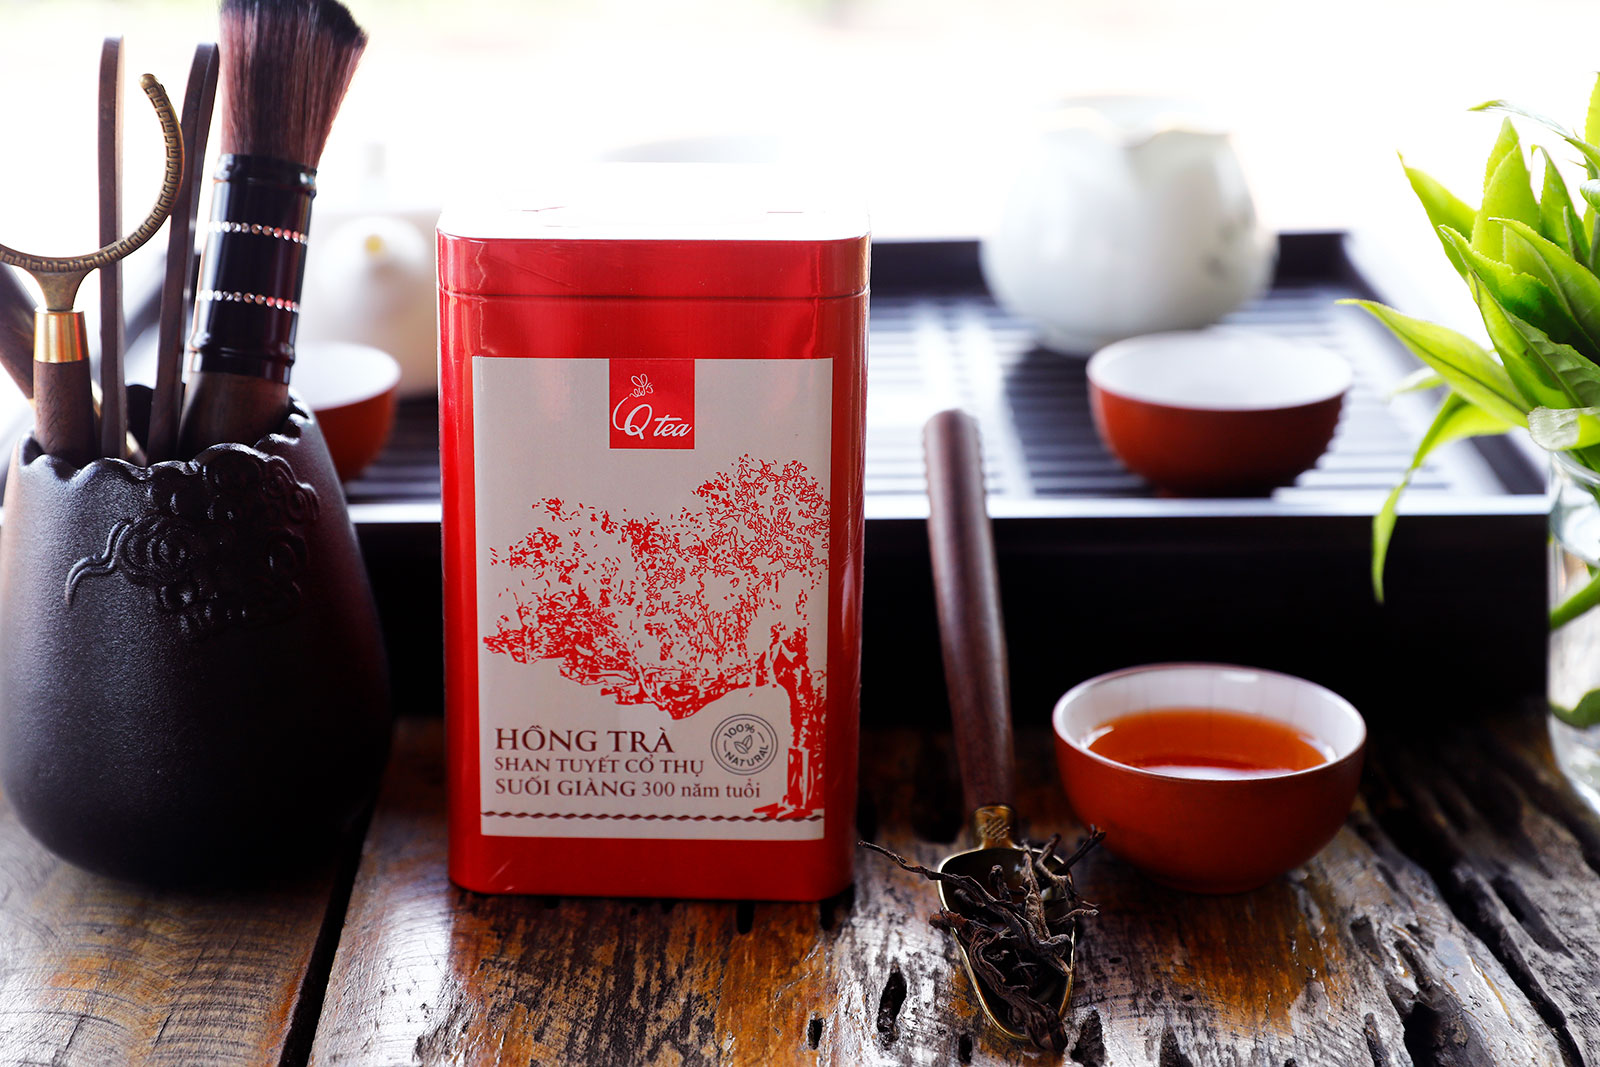 Hồng trà Shan Tuyết cổ thụ Suối Giàng 300 tuổi - Hộp thiếc - Nhãn hiệu Qtea